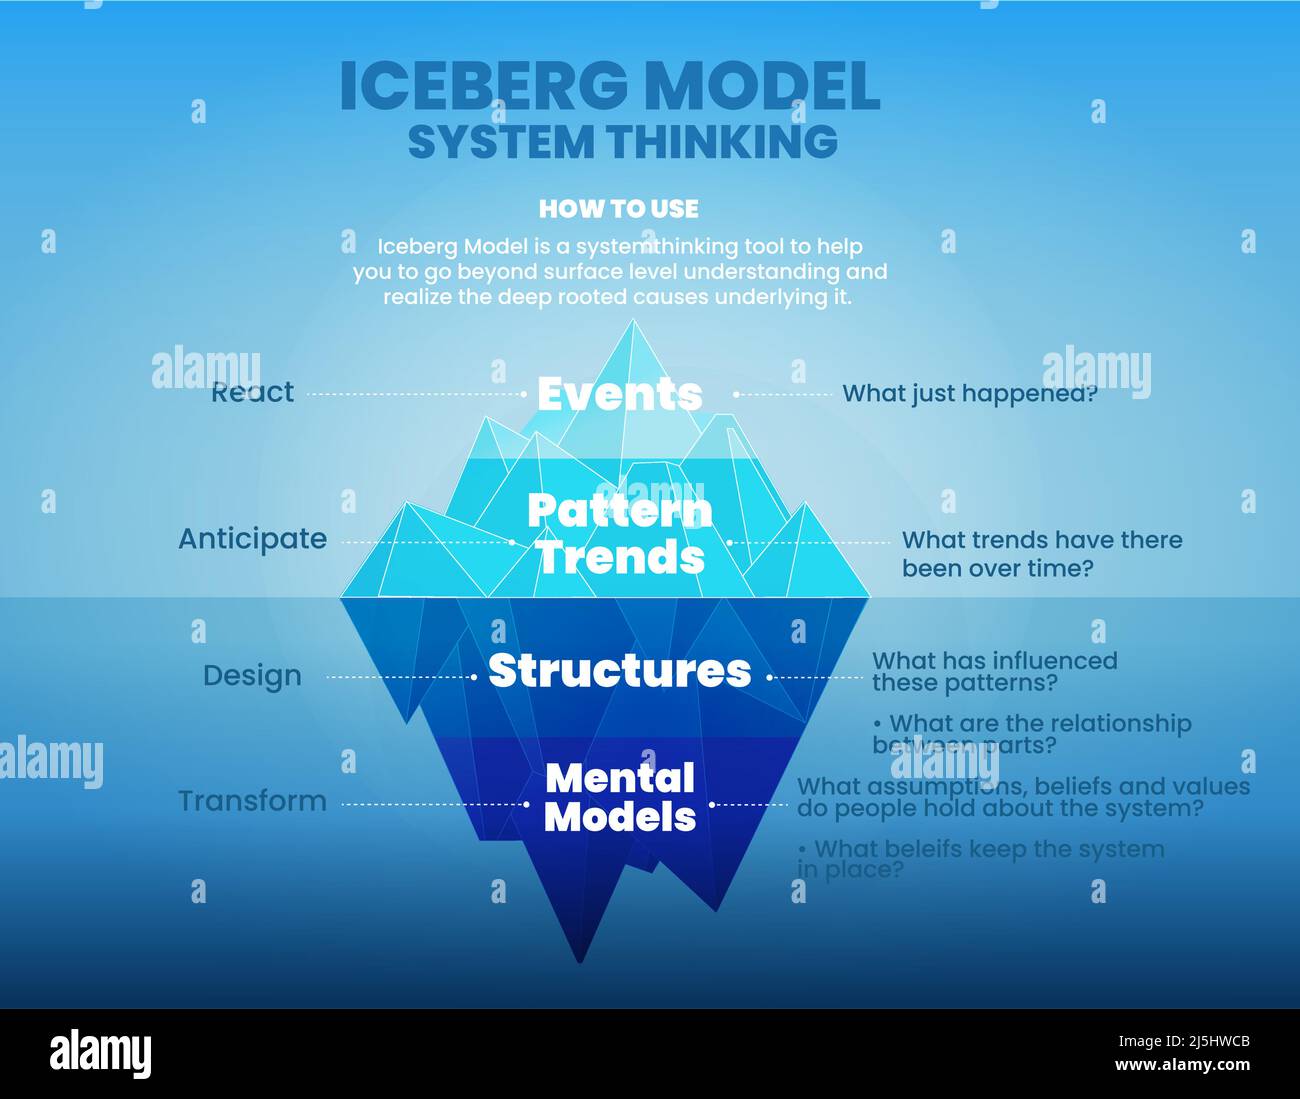 Le modèle iceberg de la pensée du système est l'illustration du vecteur et de la présentation de la montagne bleue. Cette théorie est d'analyser les causes profondes des événements cachés Illustration de Vecteur